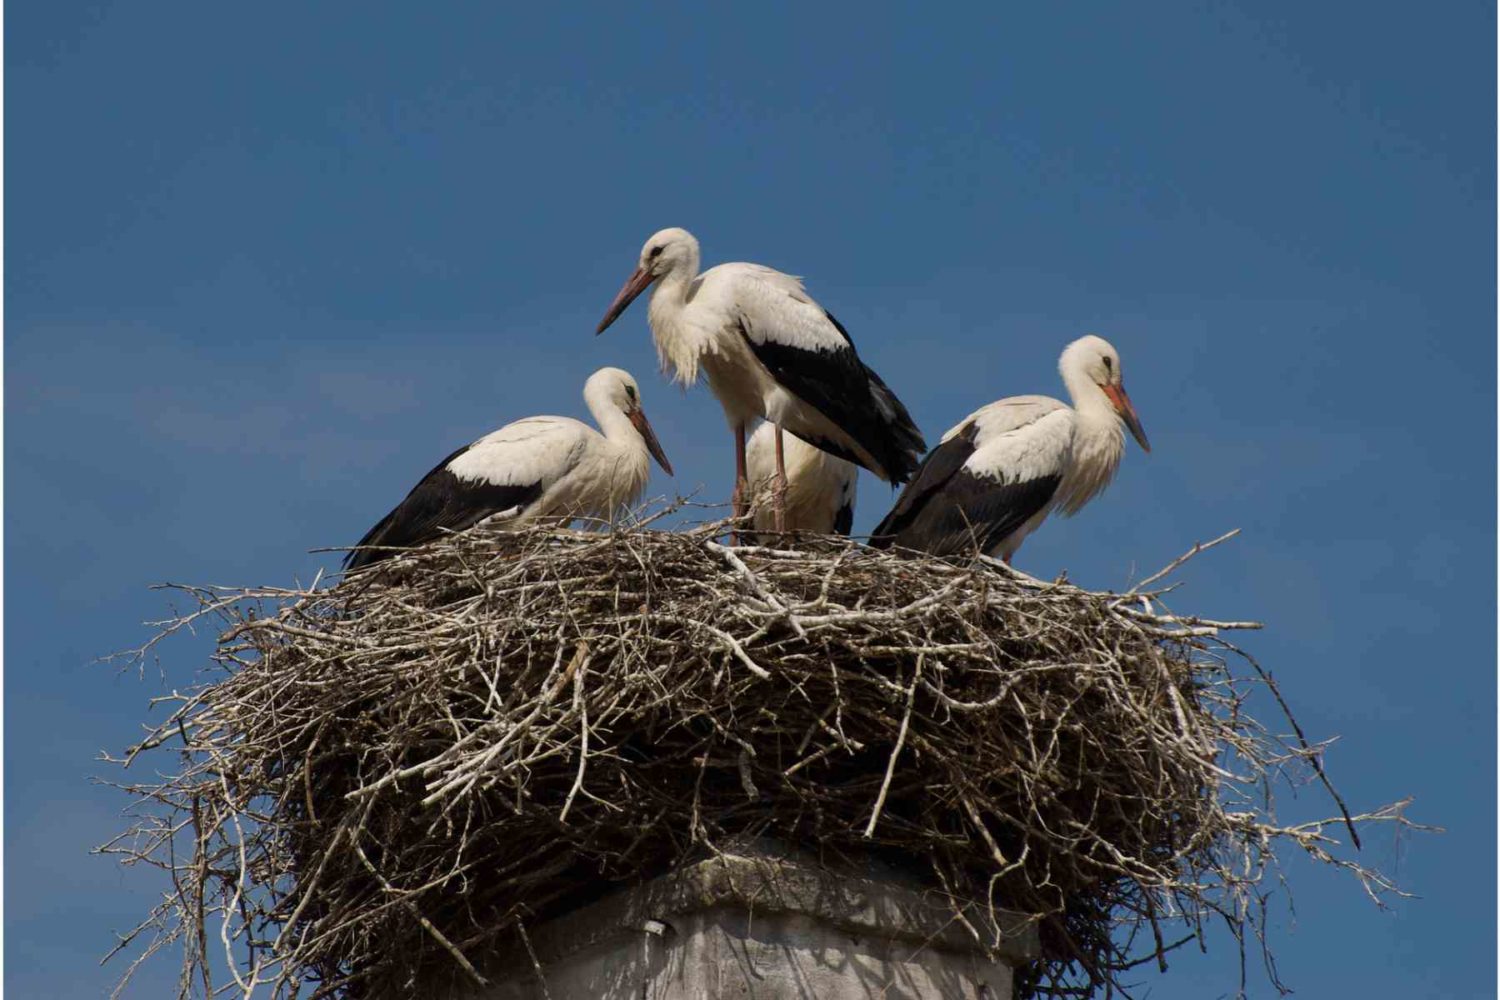 storks 's nest